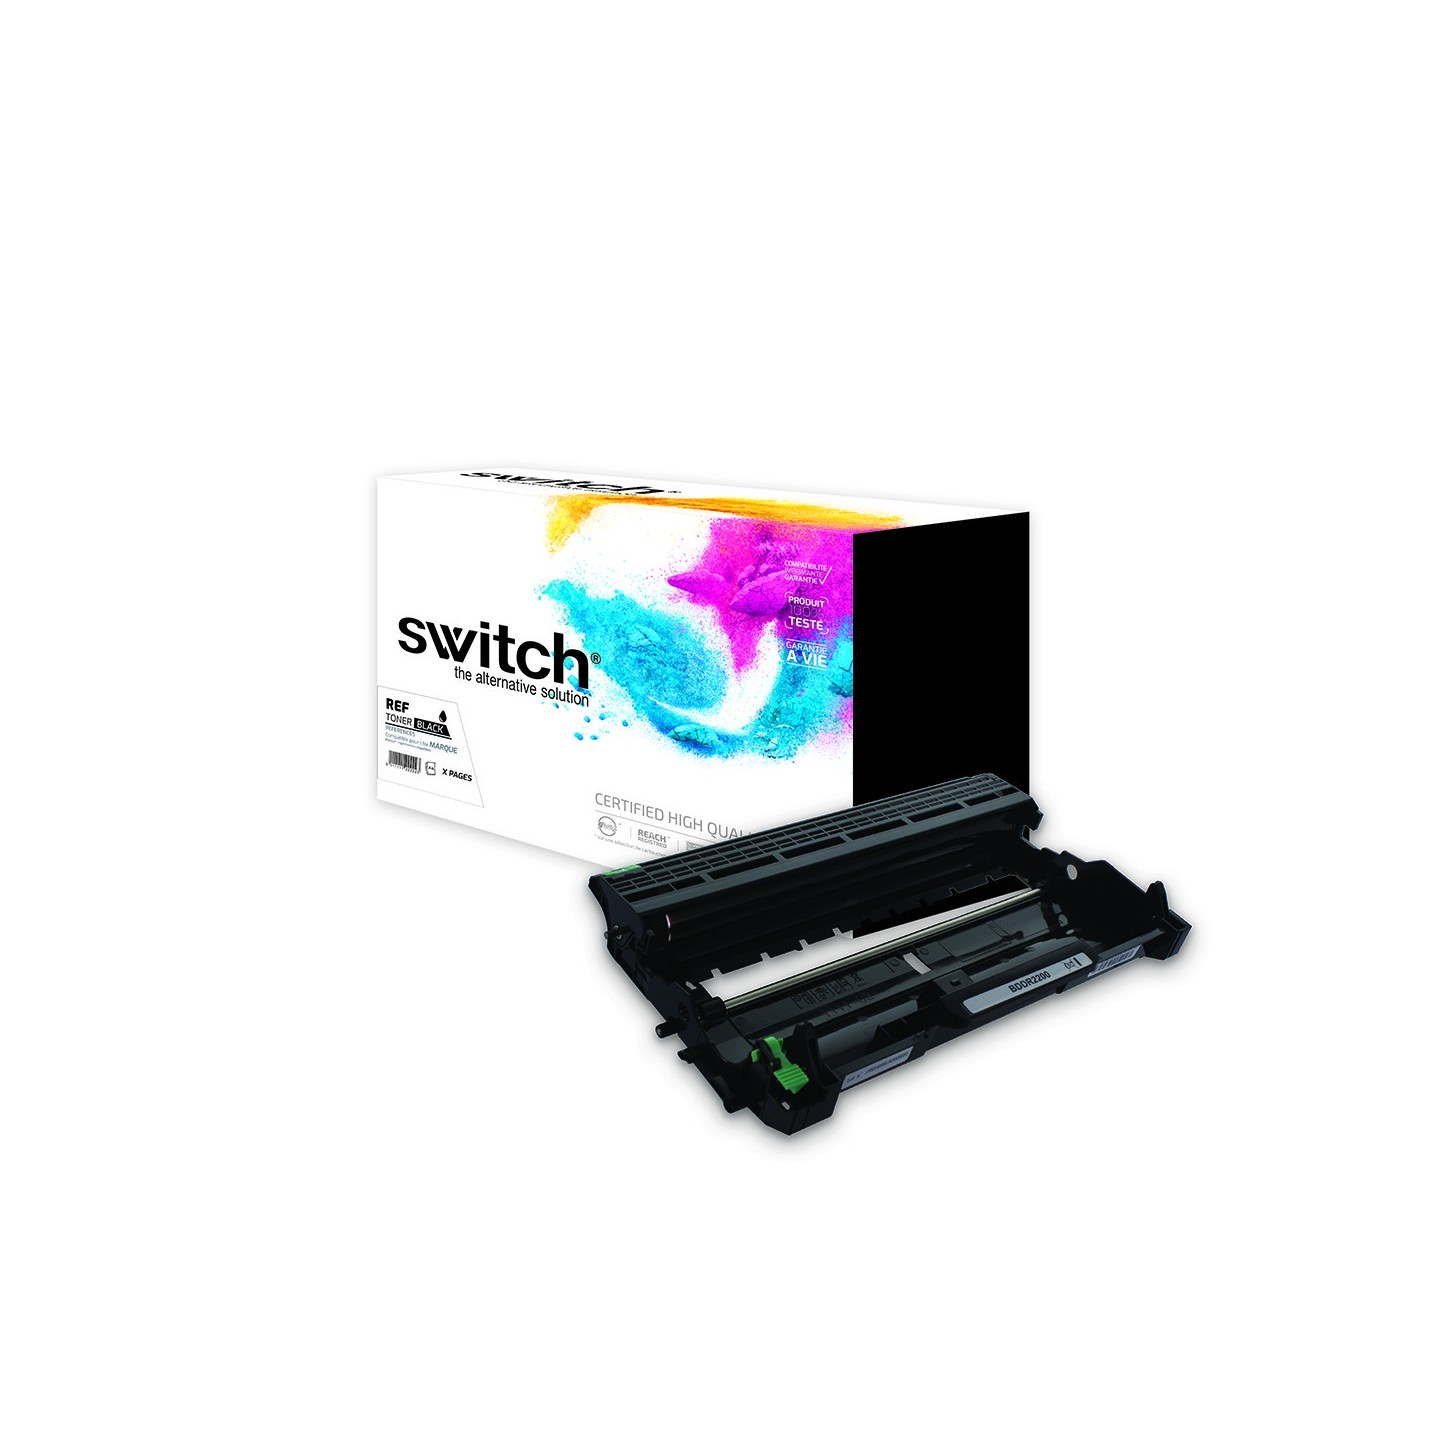 SWITCH BDDR2200 - Tambour compatible avec DR-420, 450, 2200, 2250, 2245, 2641, LD2441 - Noir